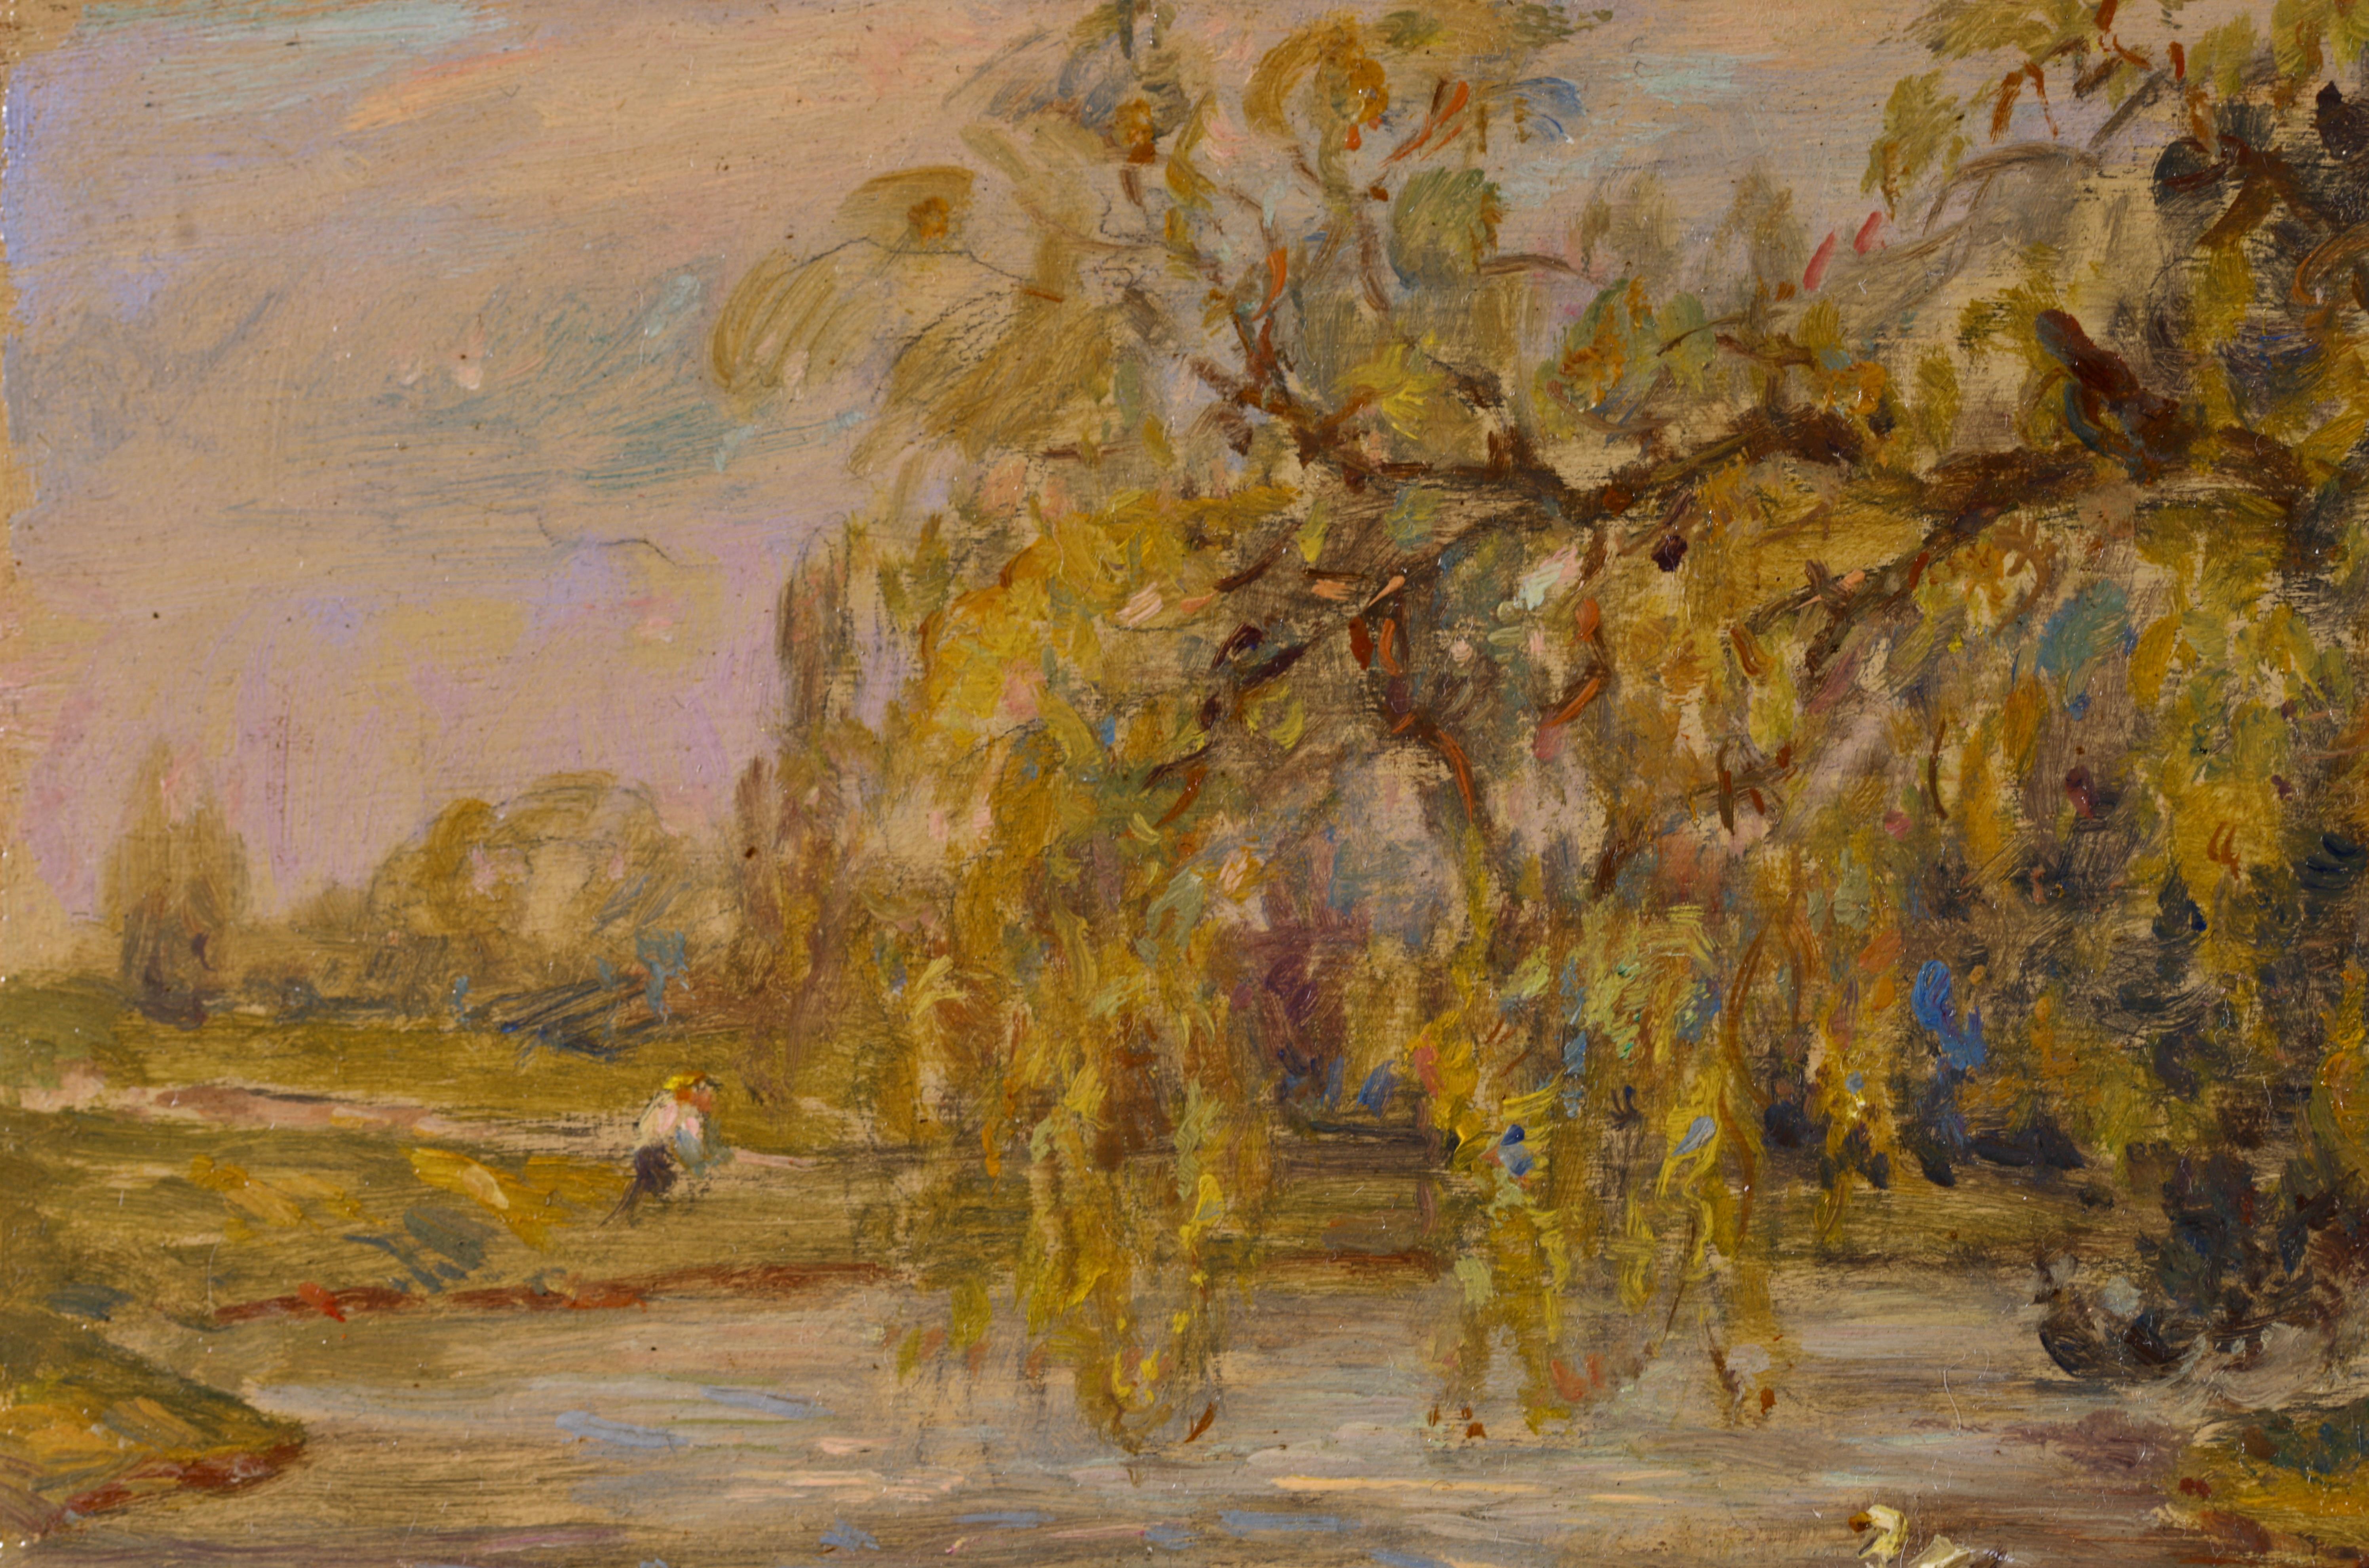 Punt on a River - Impressionist Oil, Figures by River Landscape by Henri Duhem For Sale 2